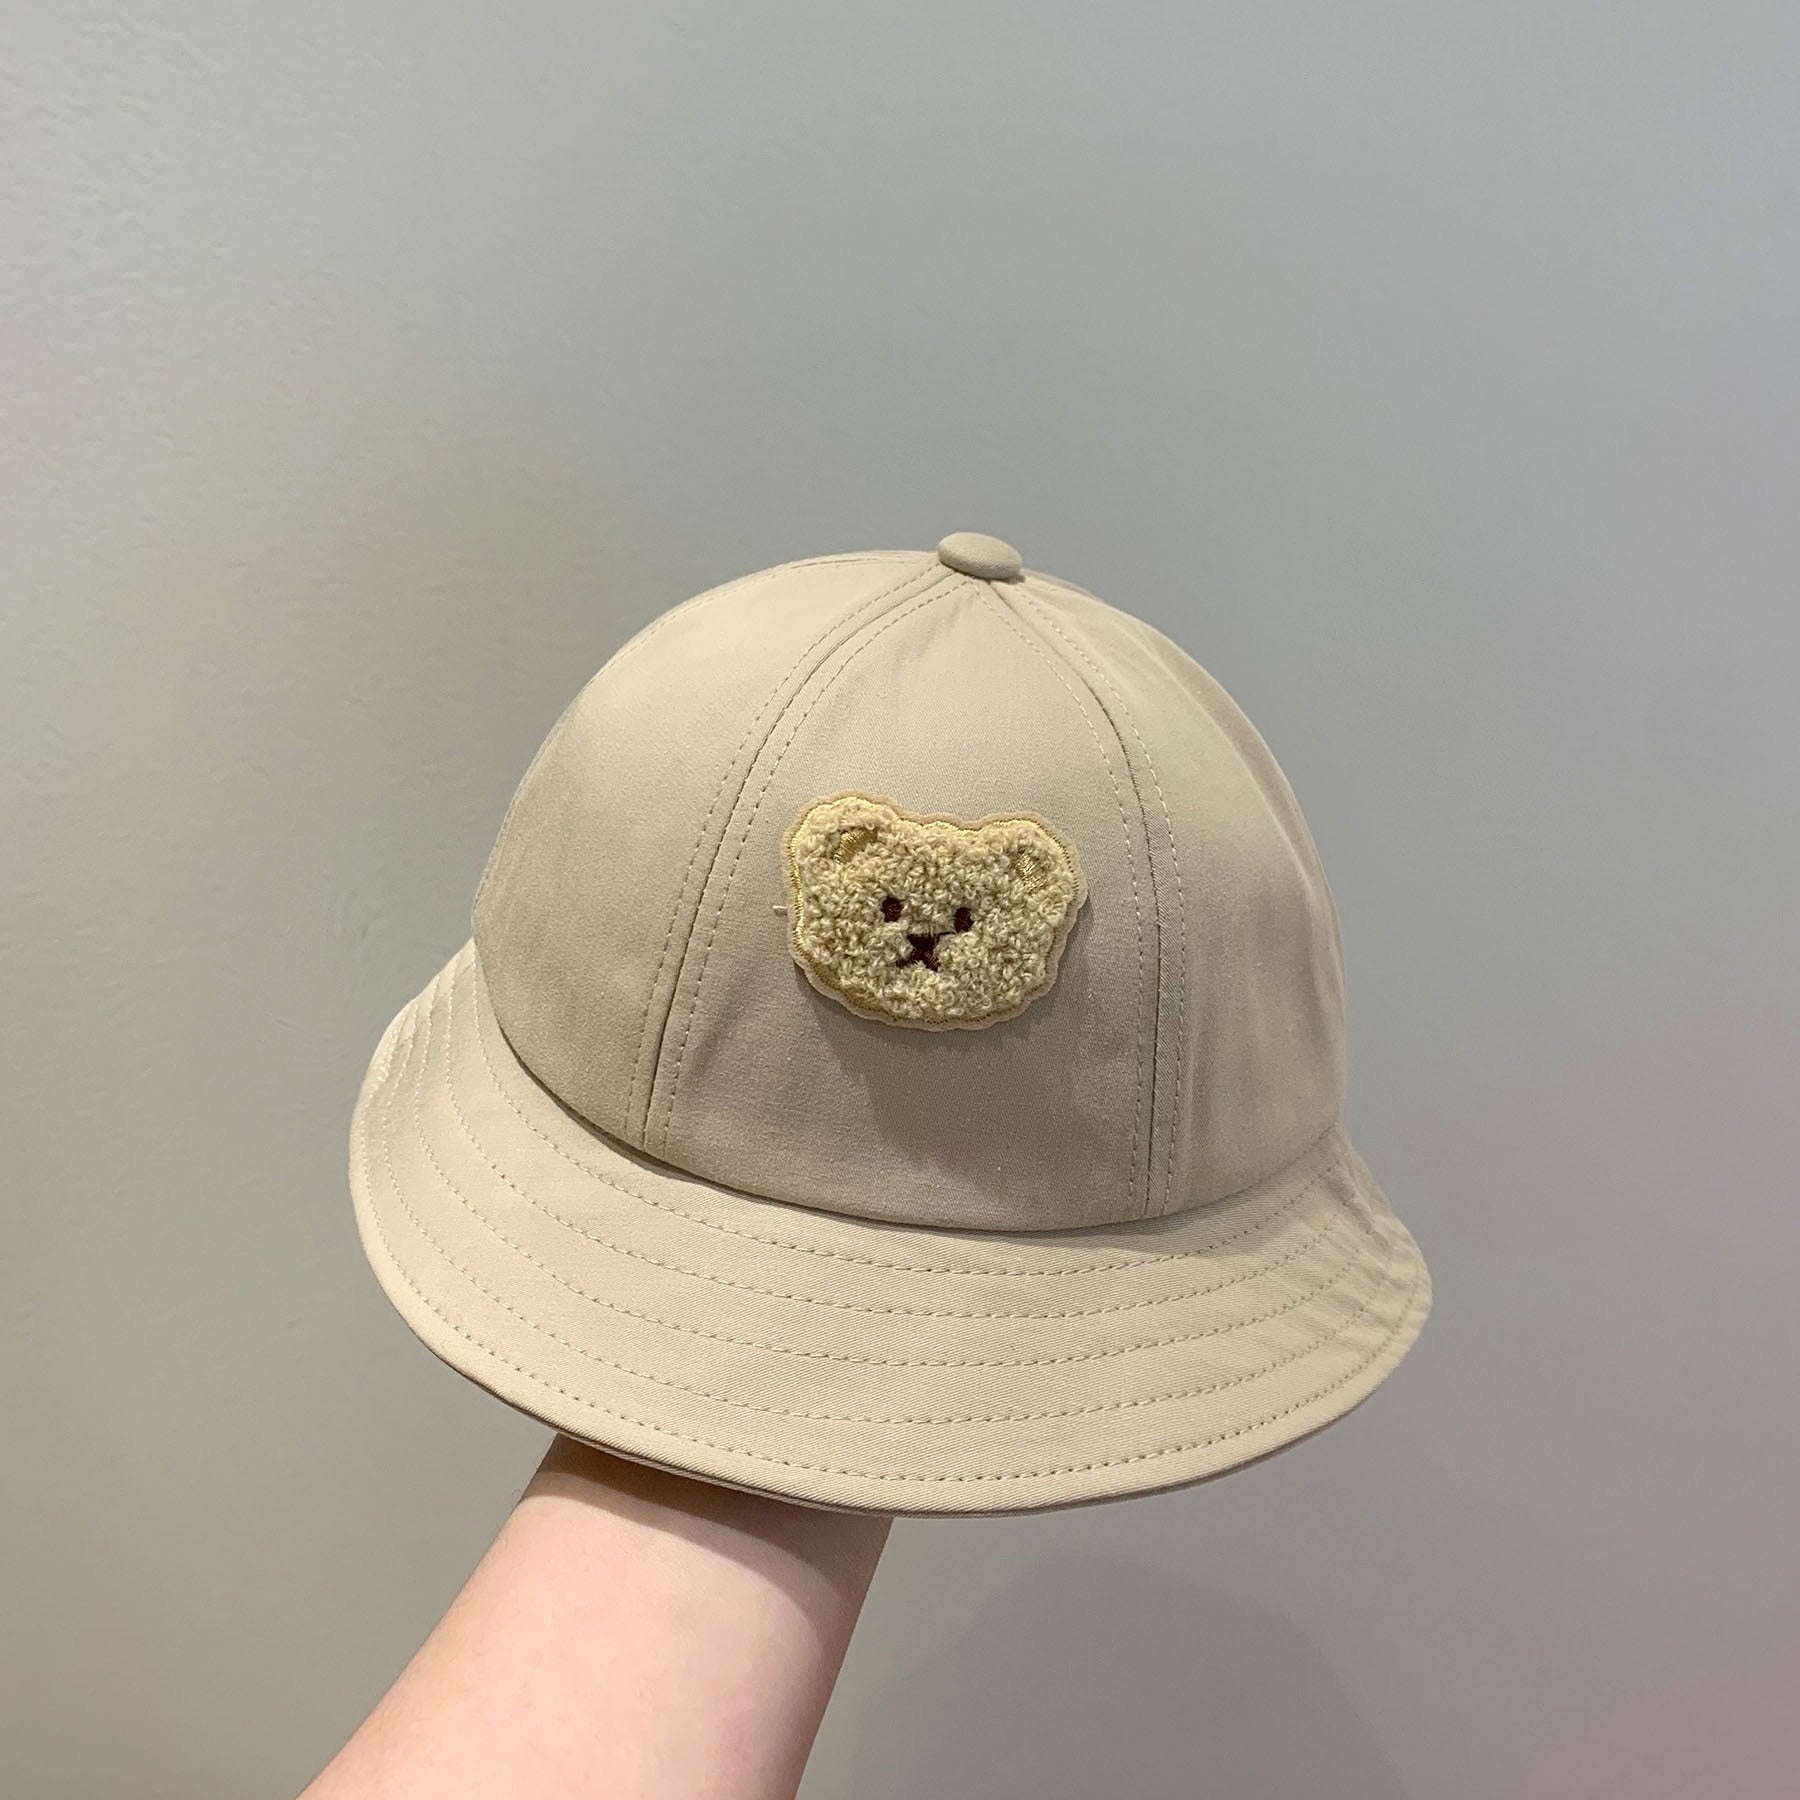 【Hats】熊ちゃん バケットハット 紐付き帽子